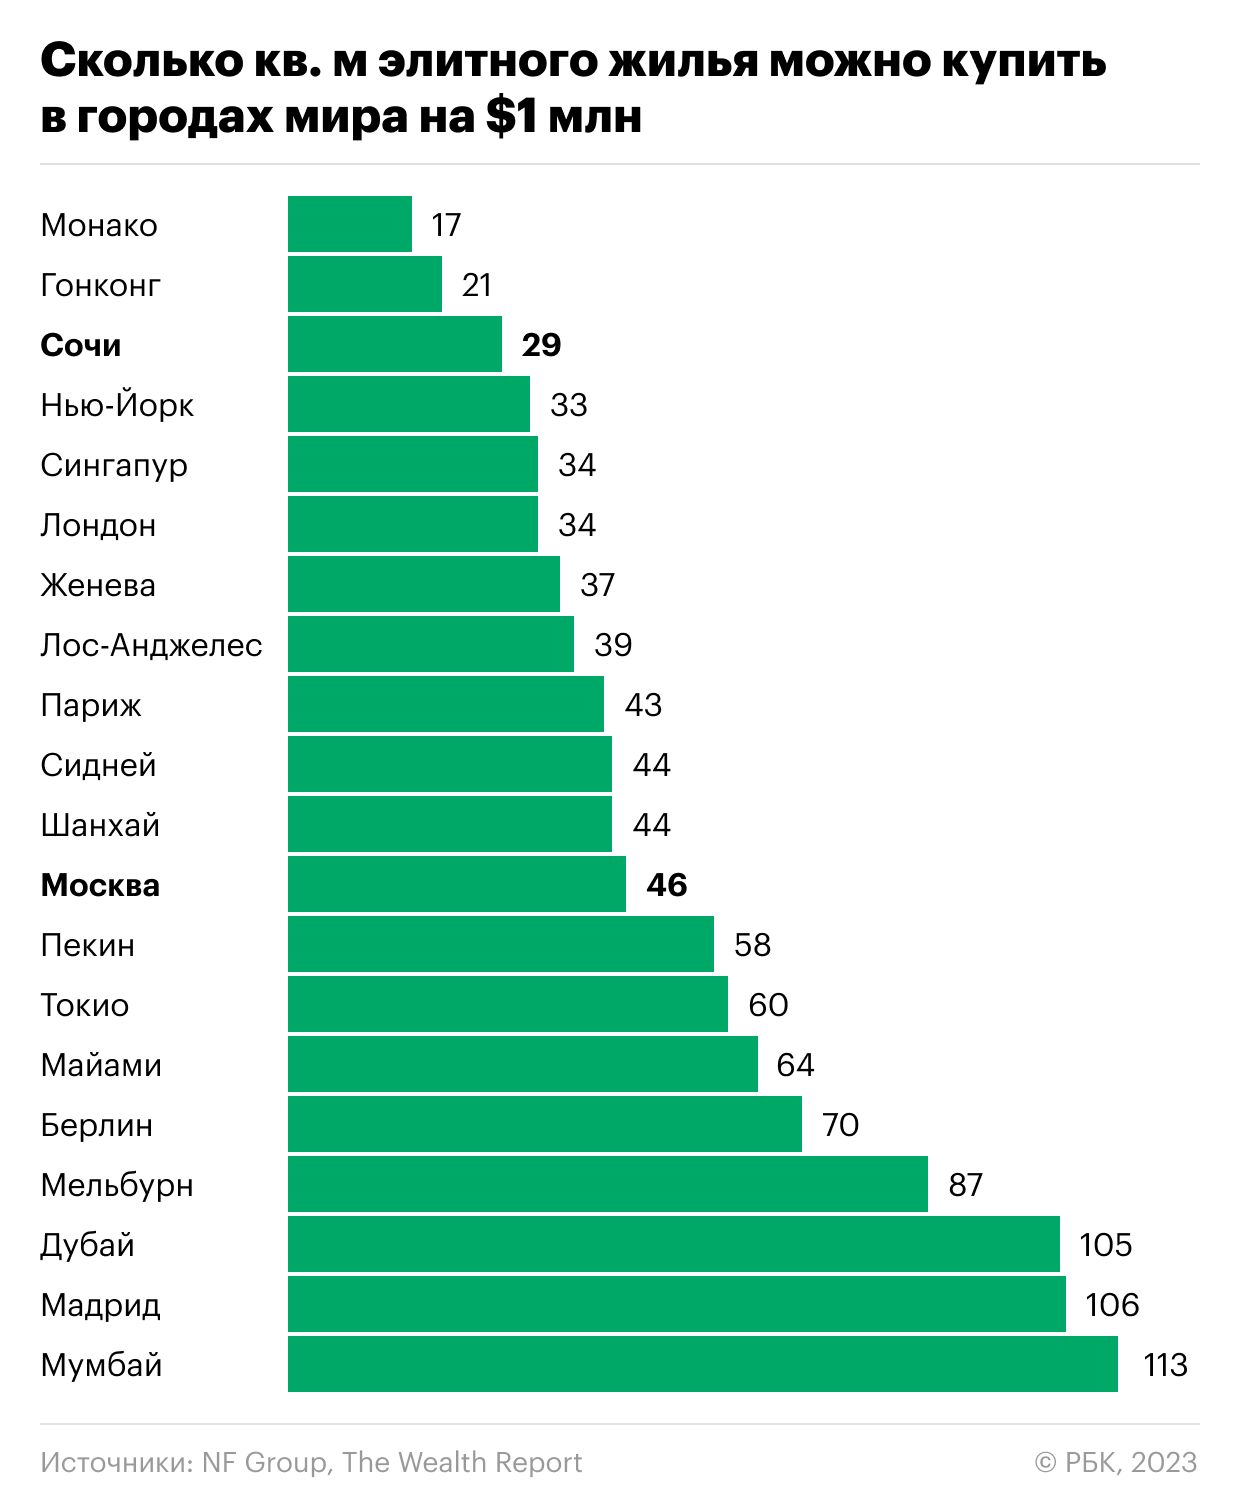 Мировой рейтинг. Самый популярный человек в России. Рейтинг стран по стоимости жилья.